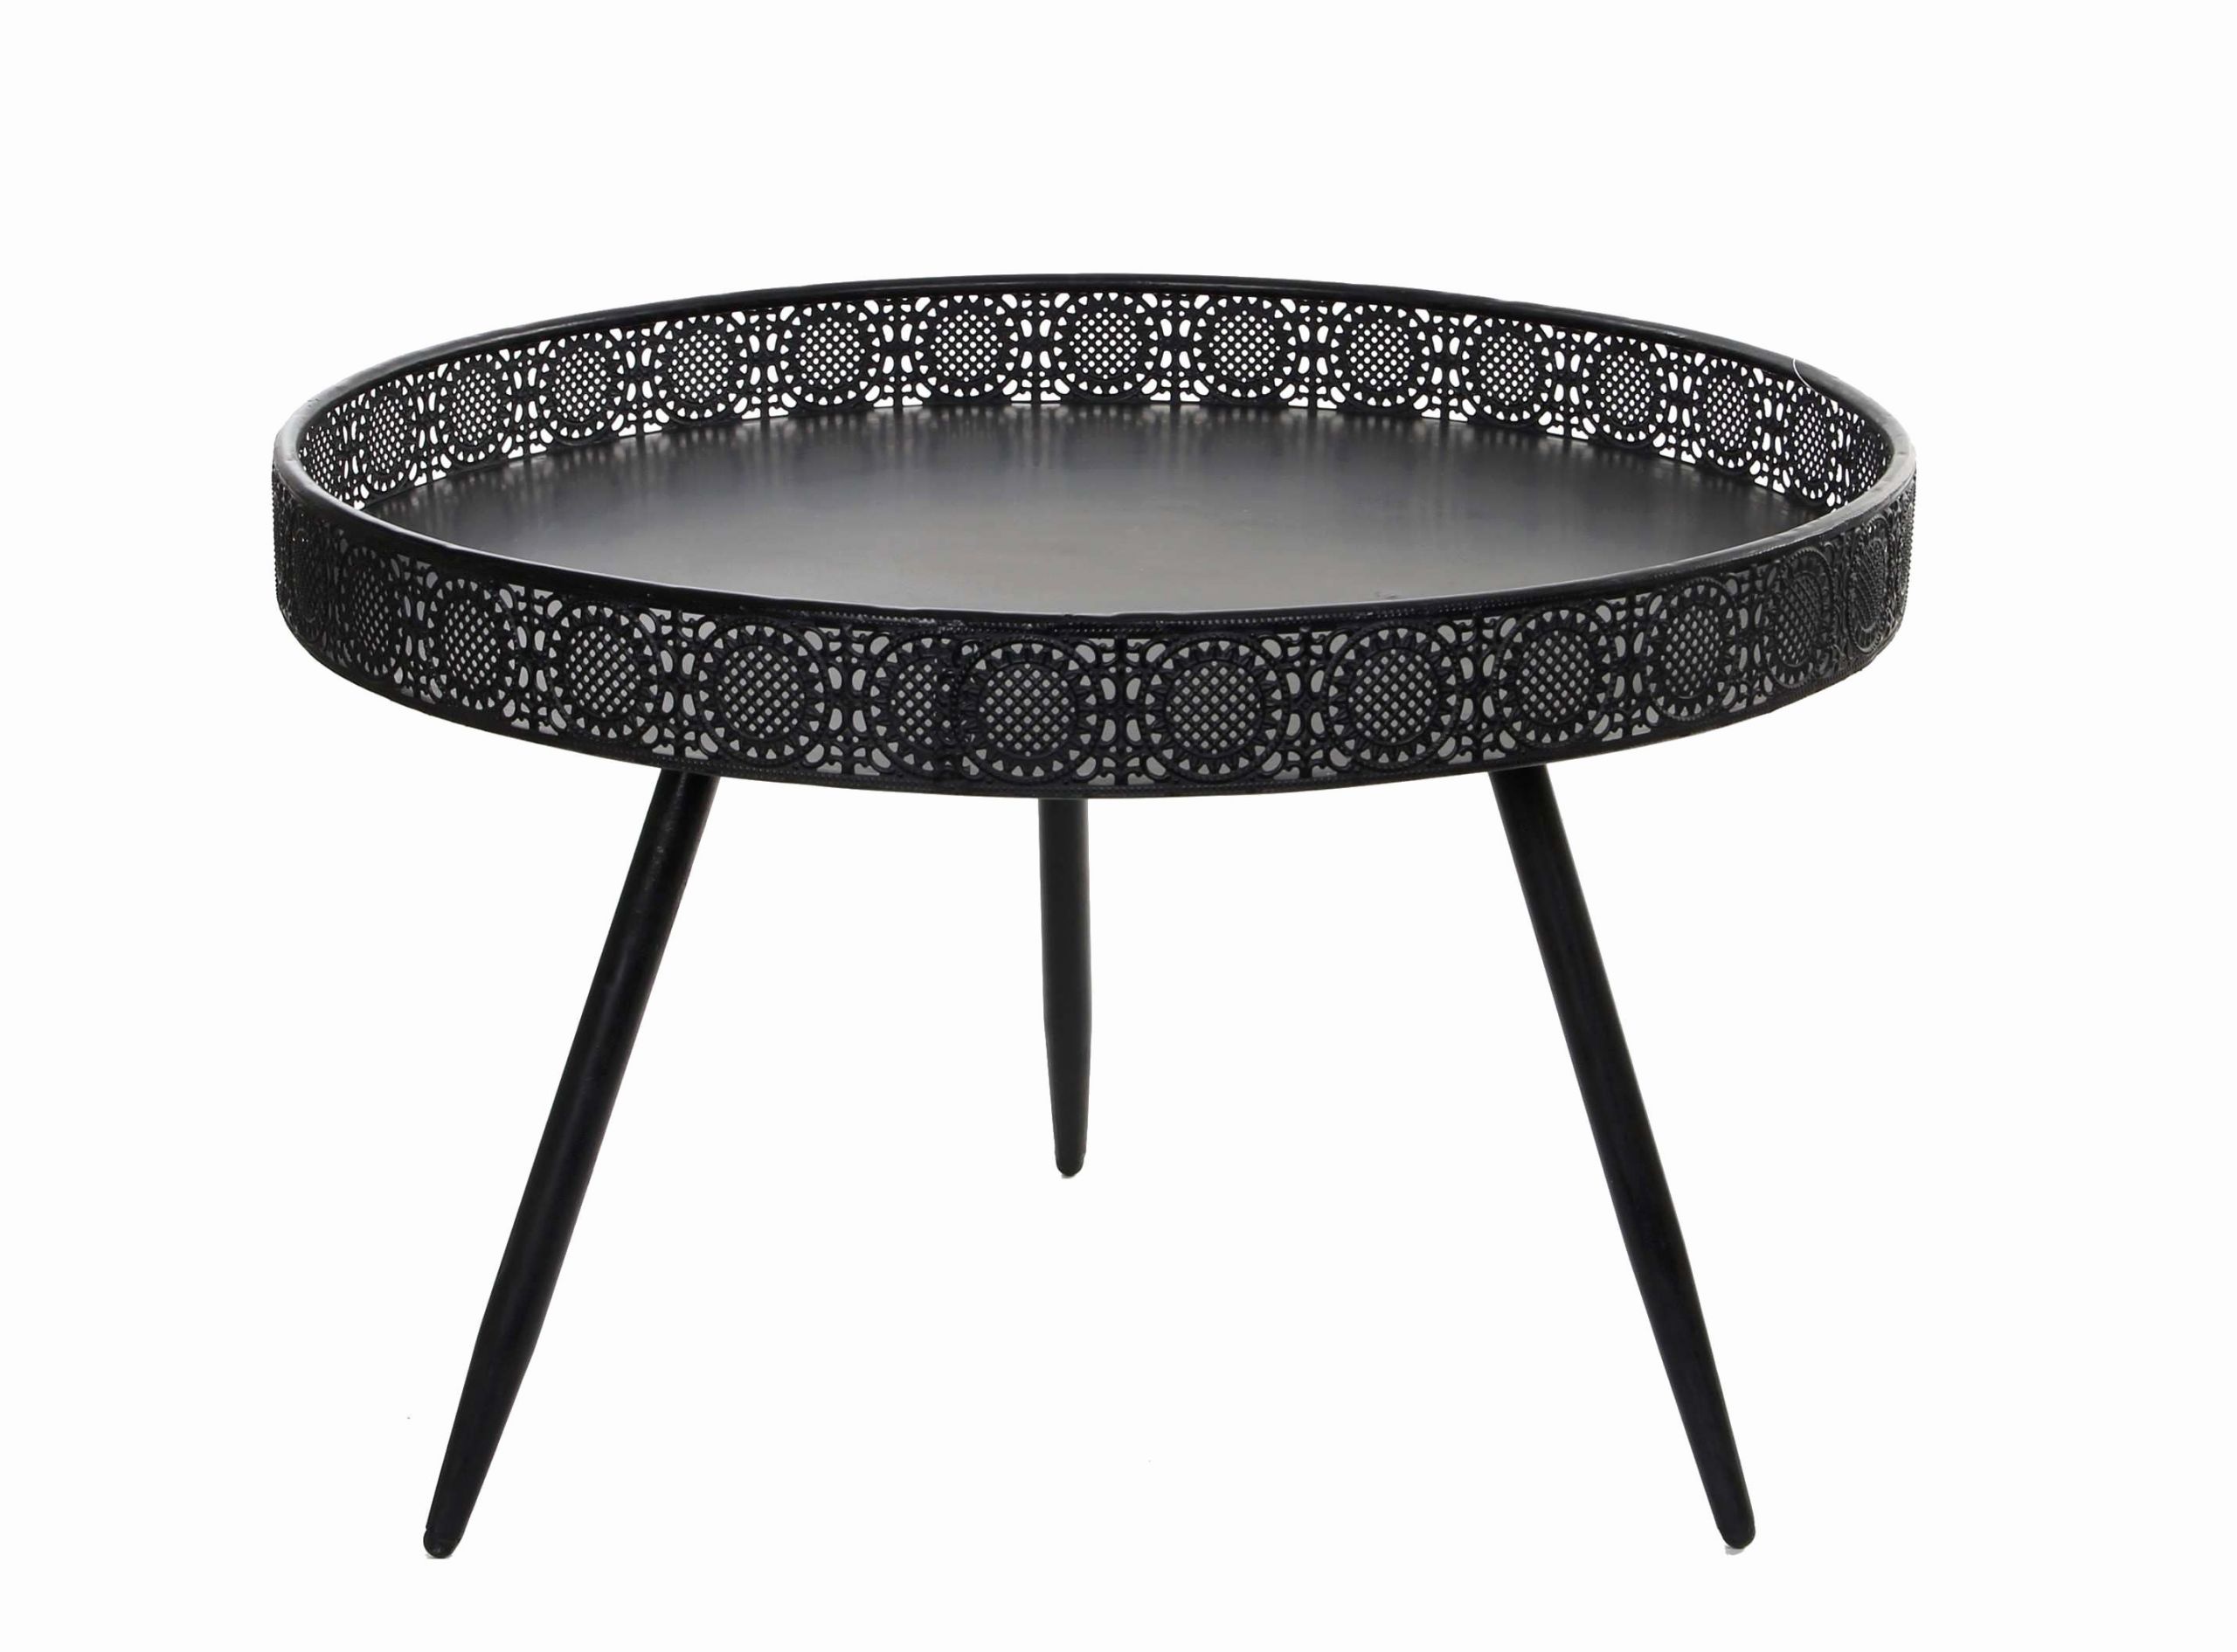 Mobilier Exterieur Design Luxe Pied De Table Metal Design Beau Elégant Table Basse Ronde